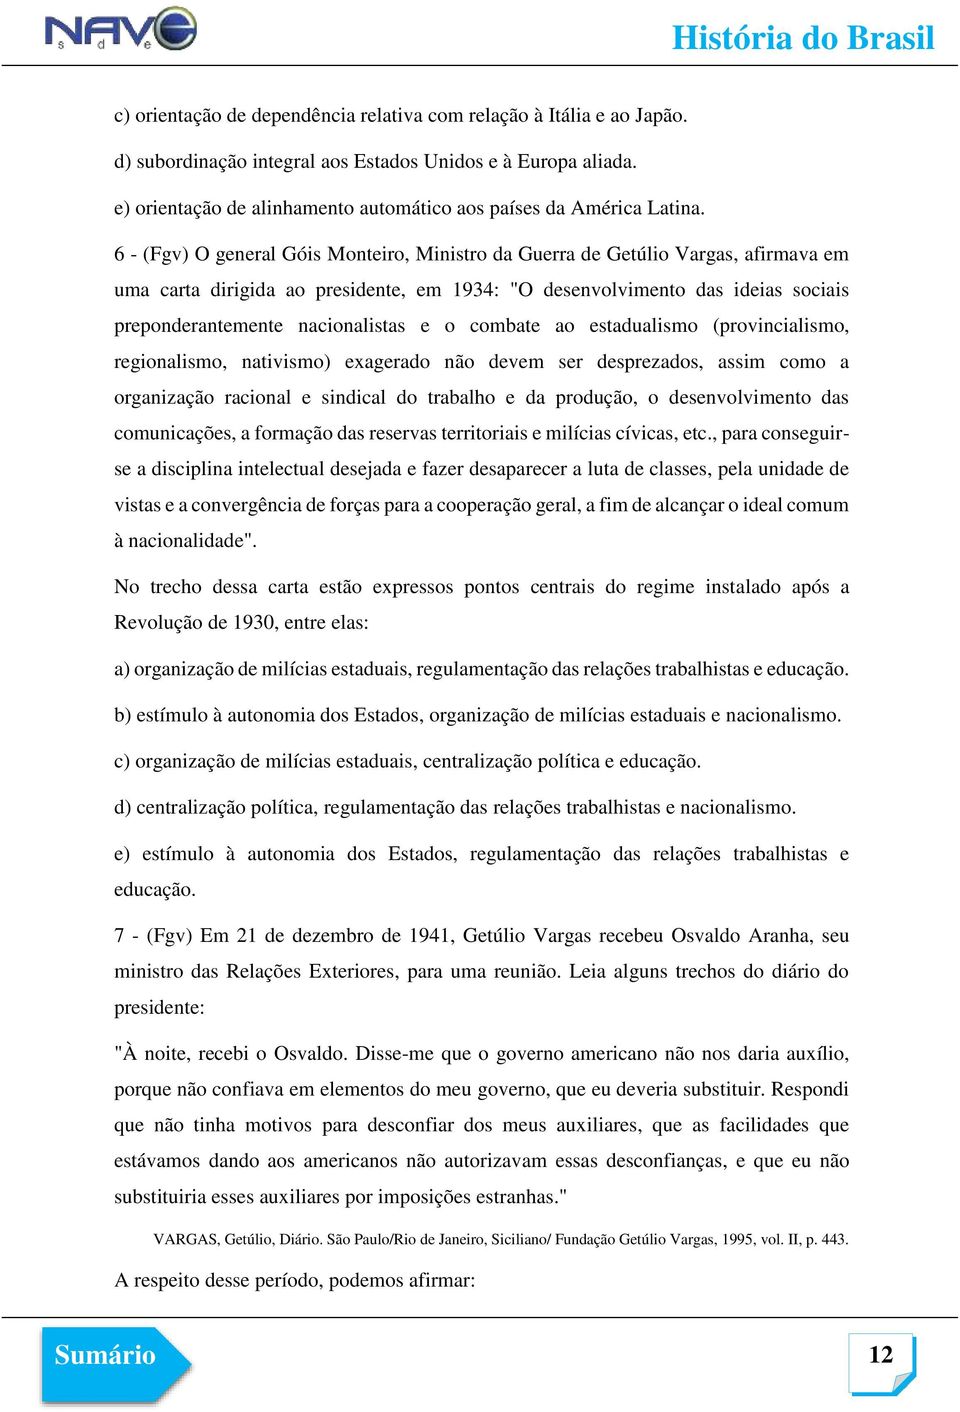 6 - (Fgv) O general Góis Monteiro, Ministro da Guerra de Getúlio Vargas, afirmava em uma carta dirigida ao presidente, em 1934: "O desenvolvimento das ideias sociais preponderantemente nacionalistas